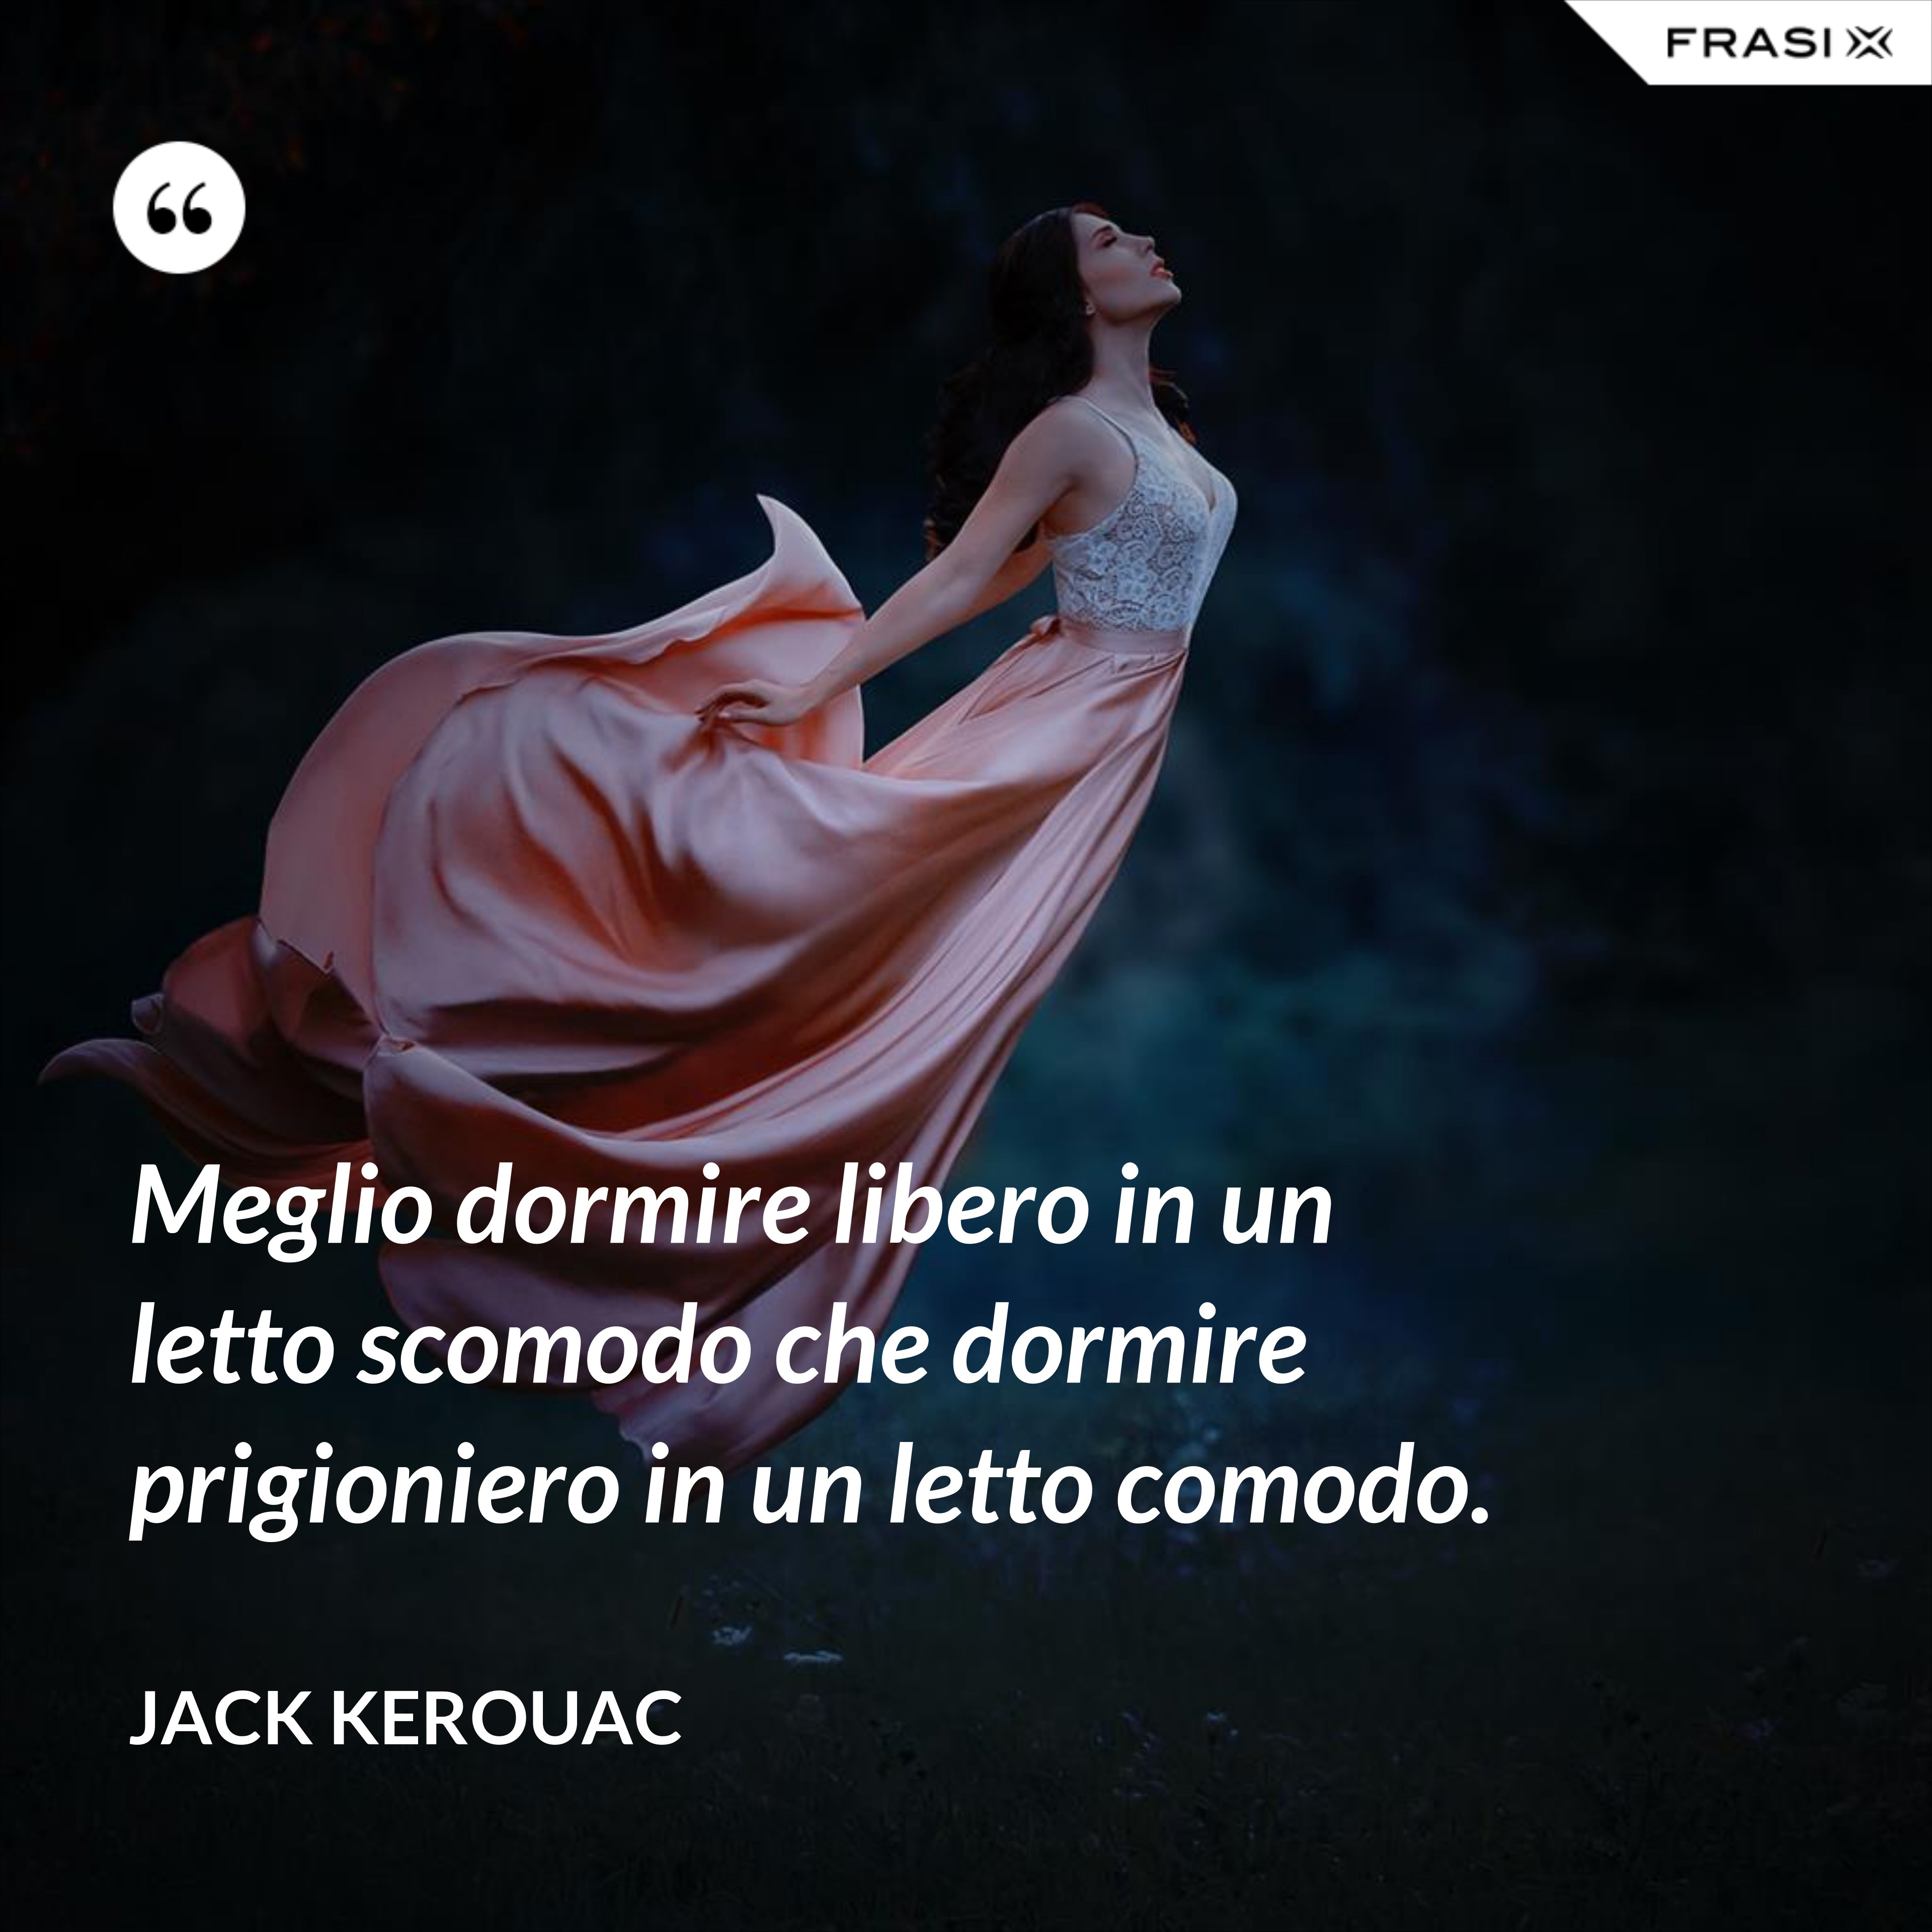 Meglio dormire libero in un letto scomodo che dormire prigioniero in un letto comodo. - Jack Kerouac